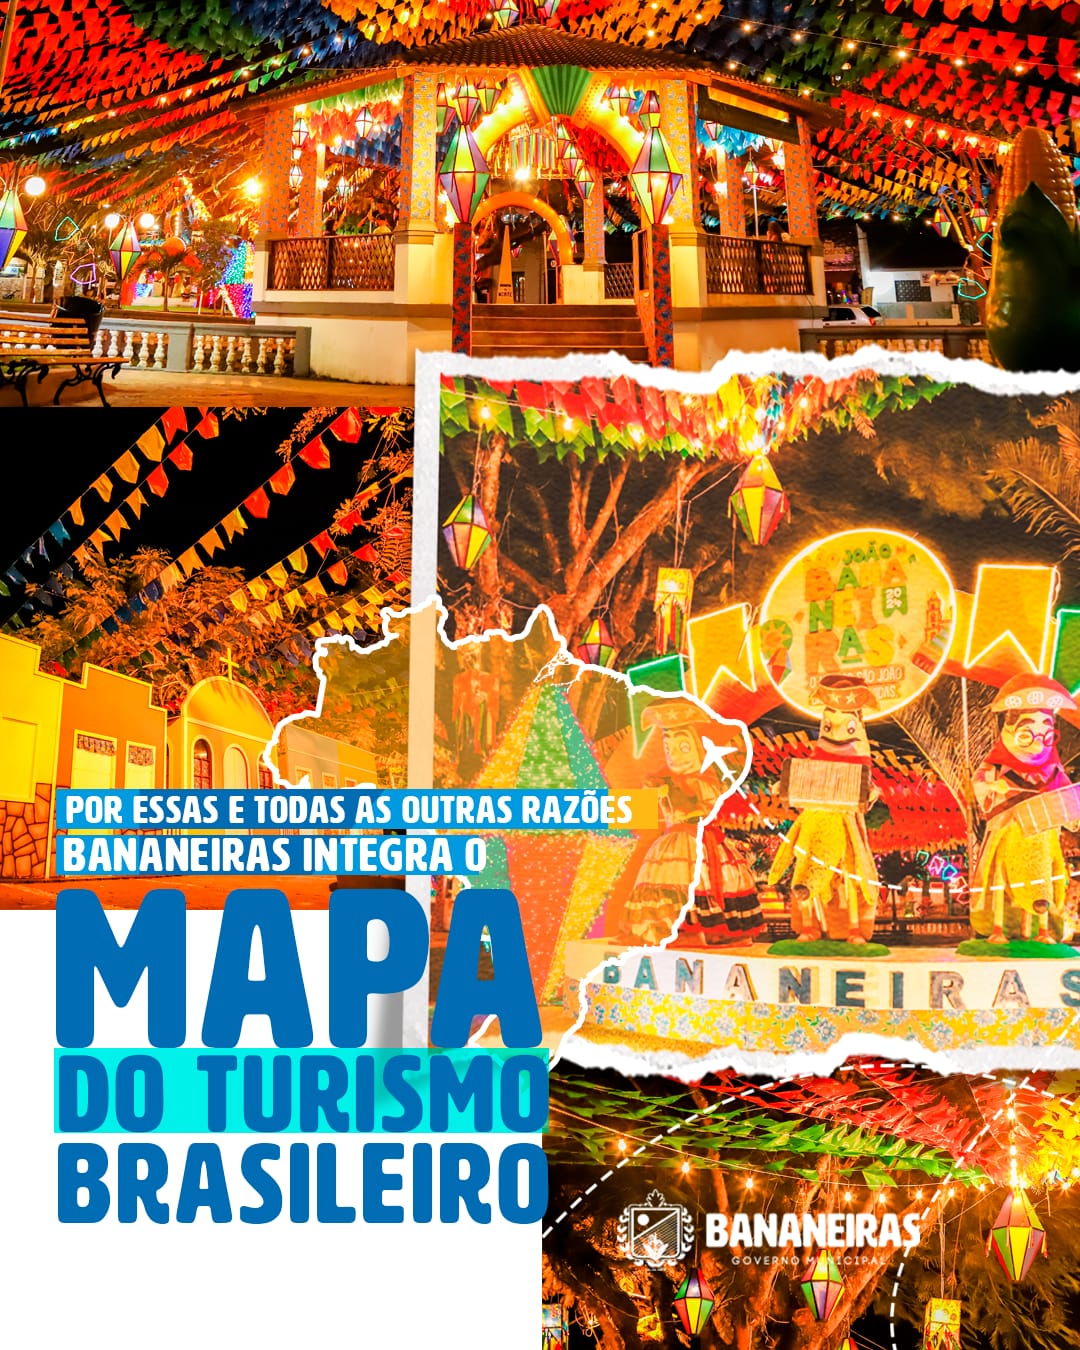 Bananeiras passa a integrar o Mapa do Turismo Brasileiro